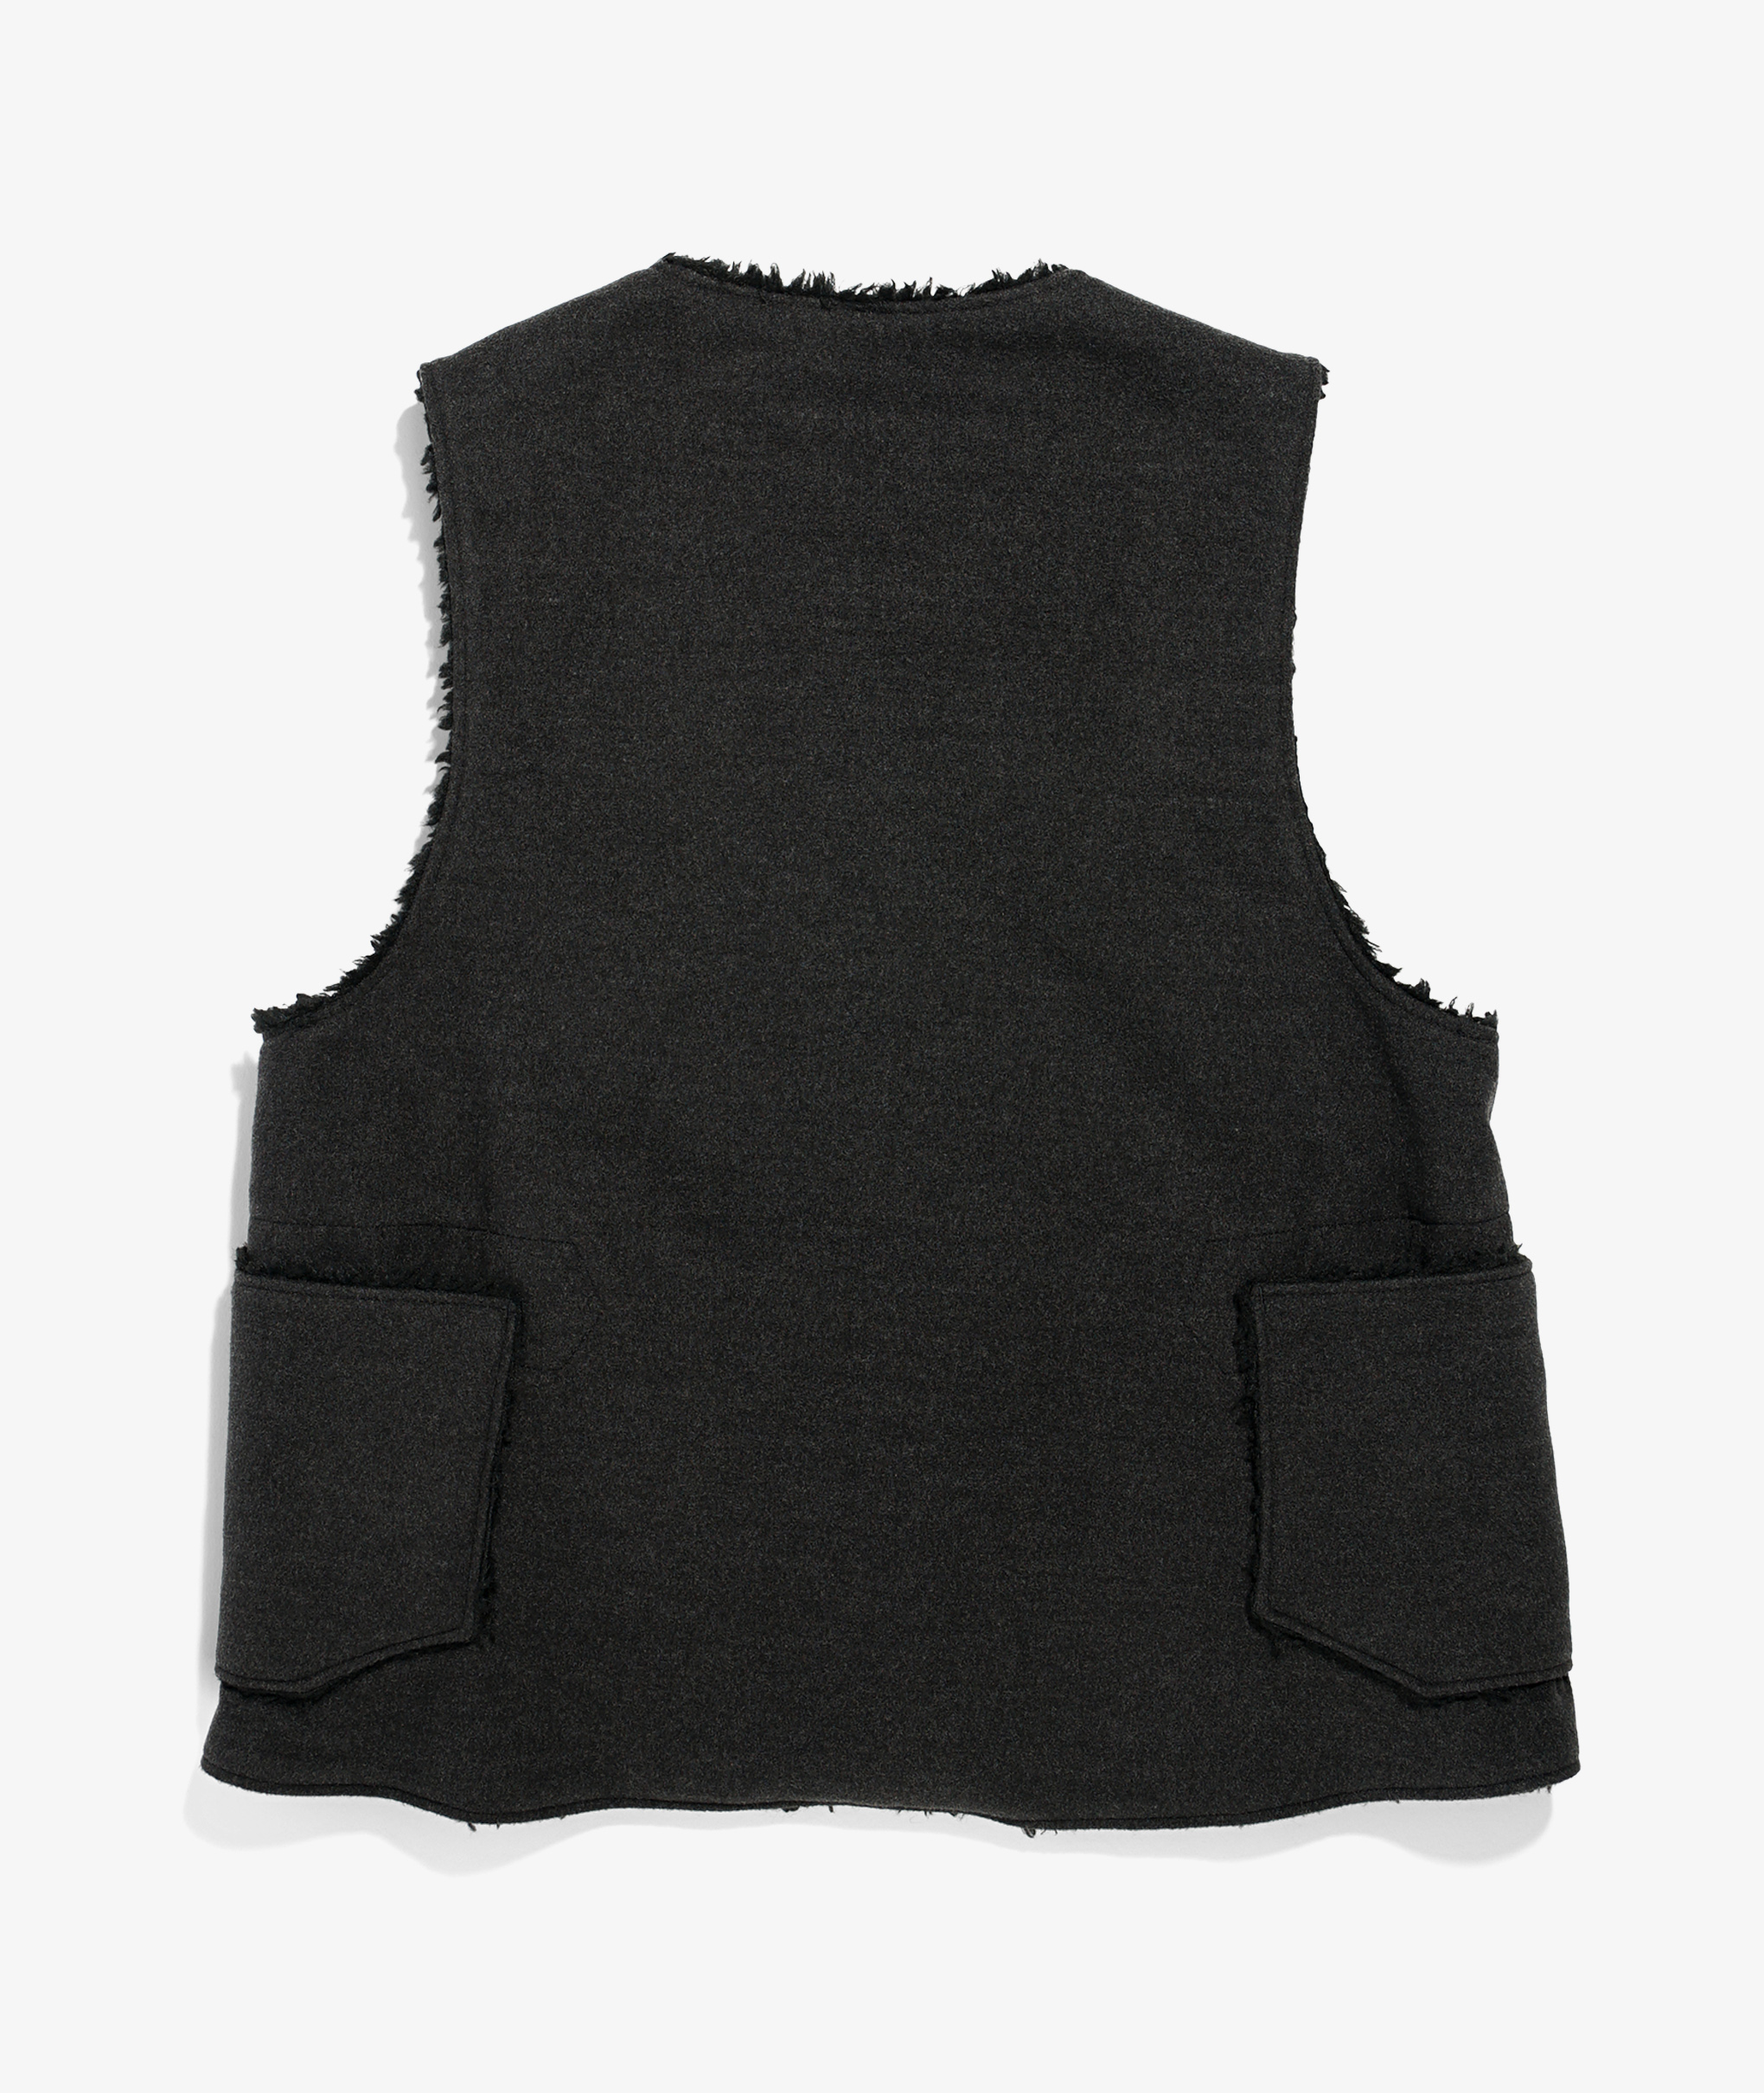 7,200円21AW Engineered Garments Over Vest